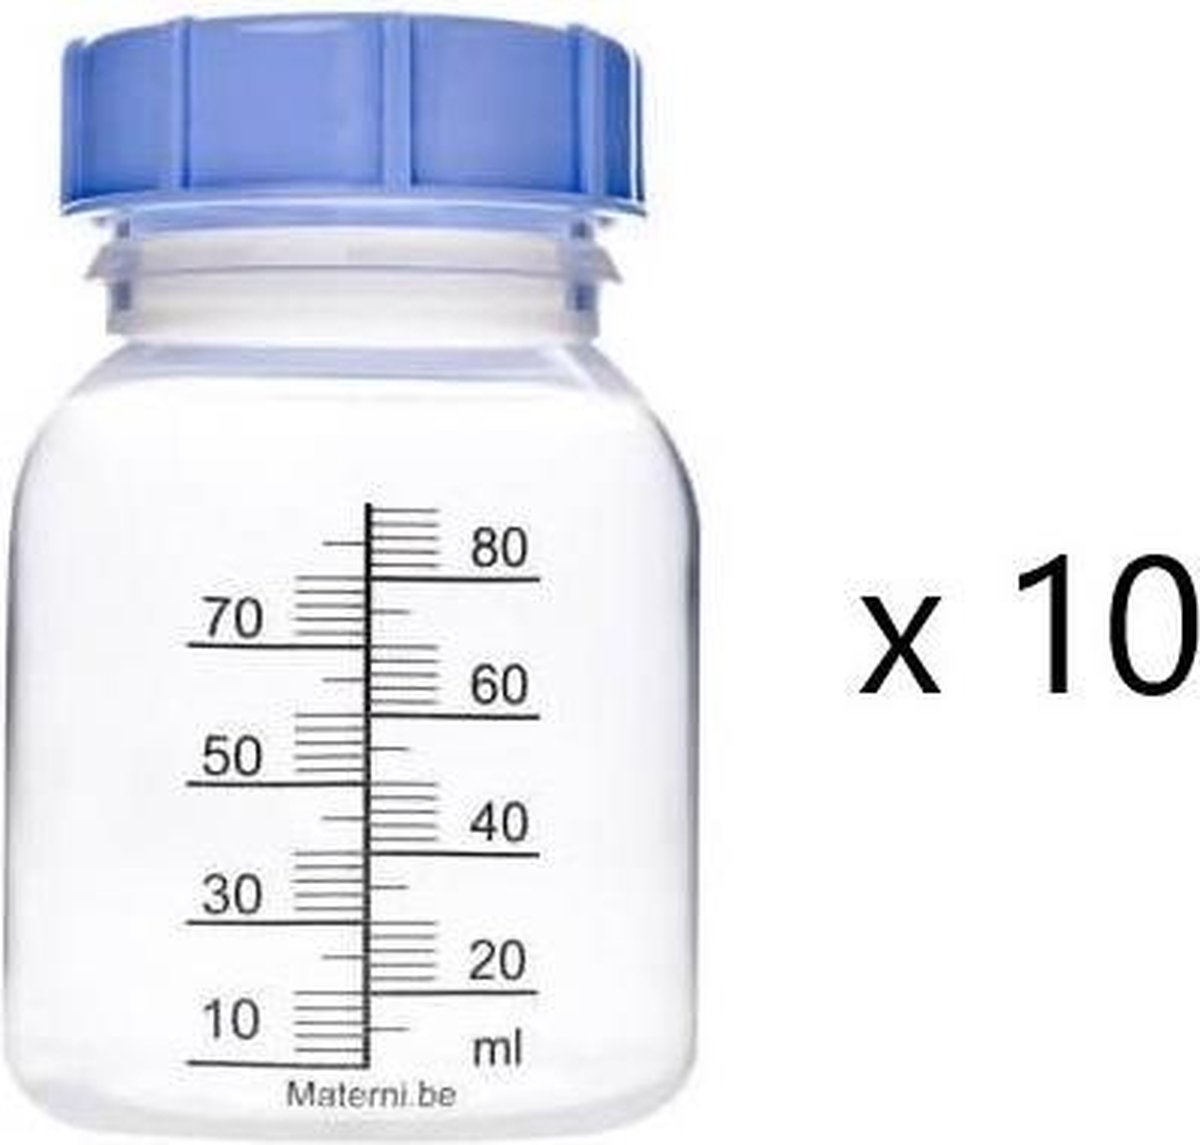 MATERNI - 10x Moedermelkflesje 80 ml met dop tbv borstvoeding - Materni